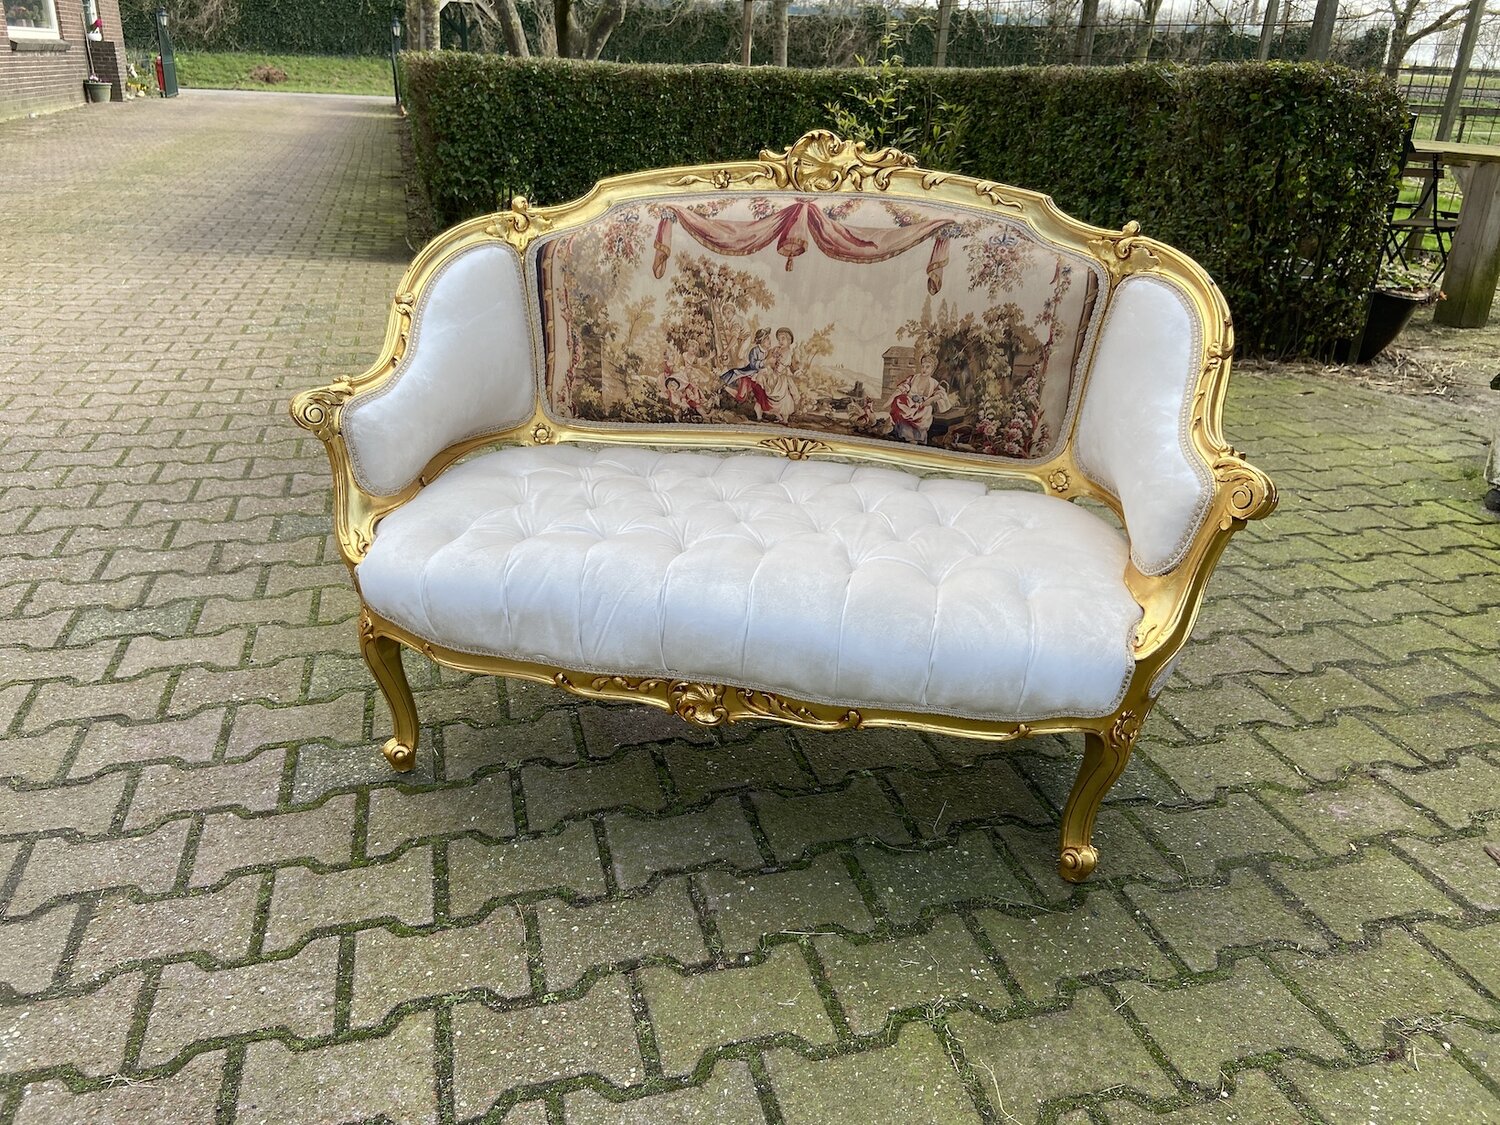 French Louis XVI Style tufted sofa-SQ9447742 — OSMAN ANTIQUE